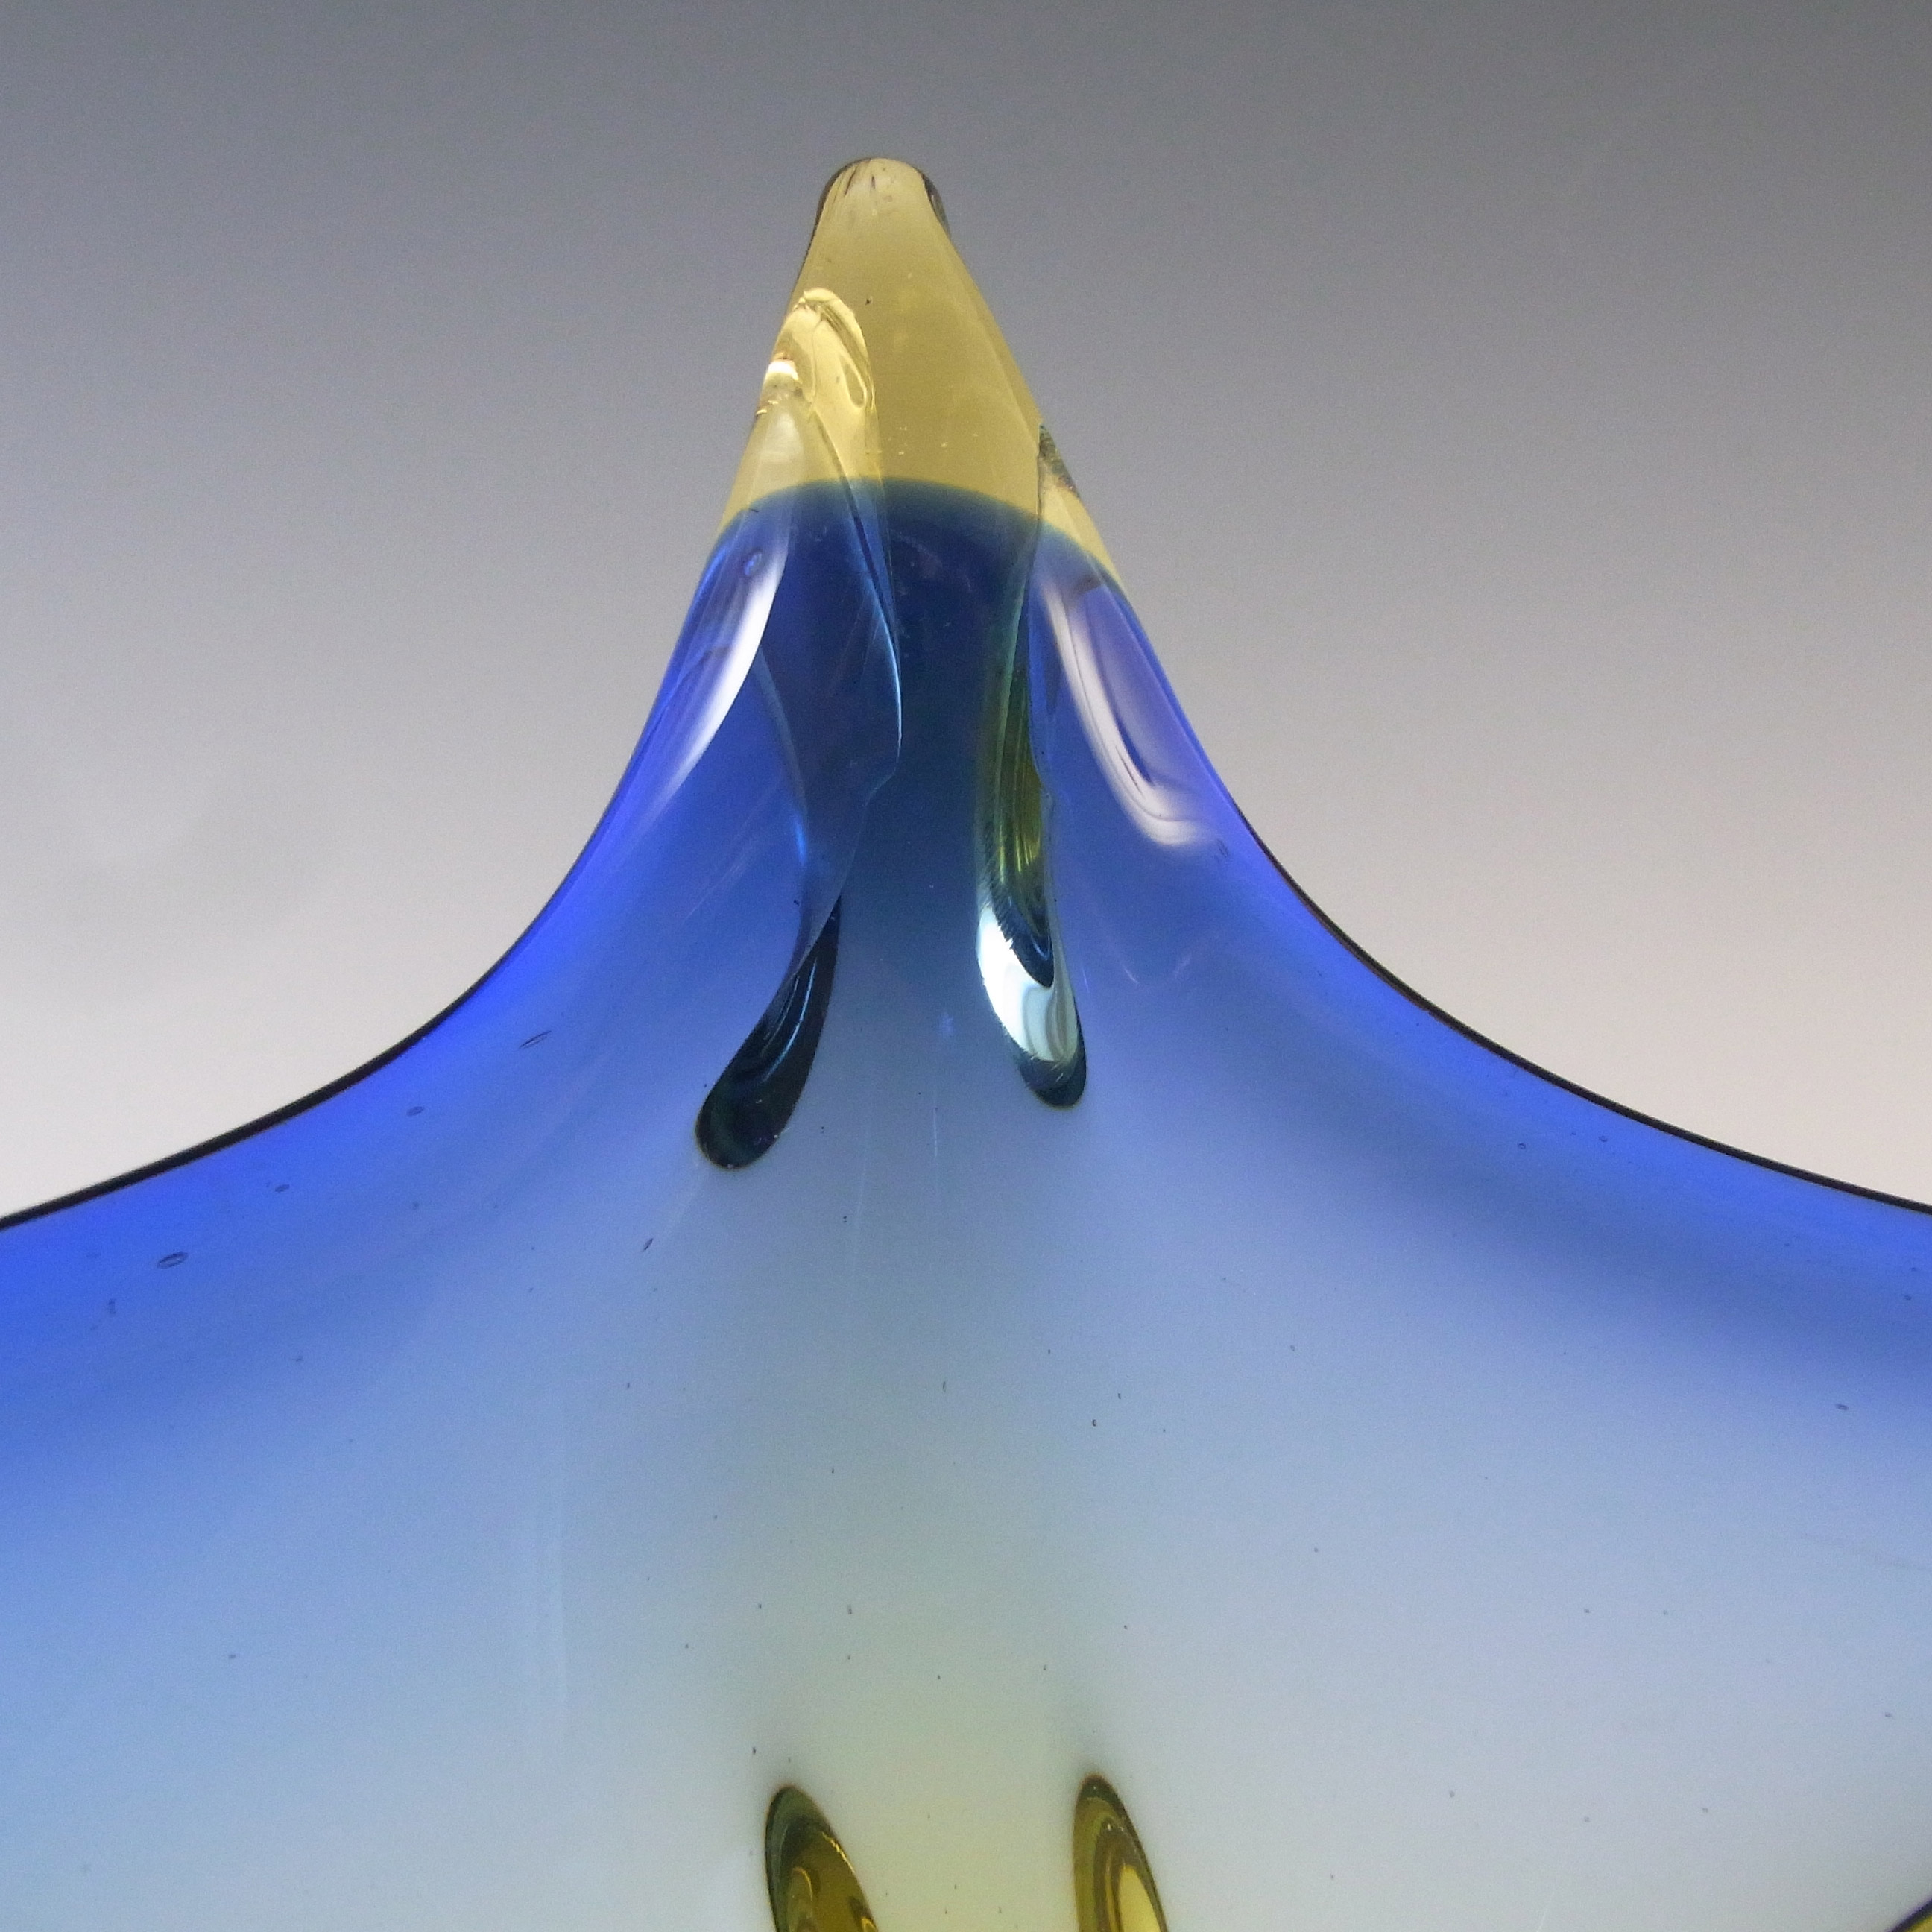 Cristallo Venezia Murano Blue & Amber Sommerso Glass Vintage Bowl - Click Image to Close